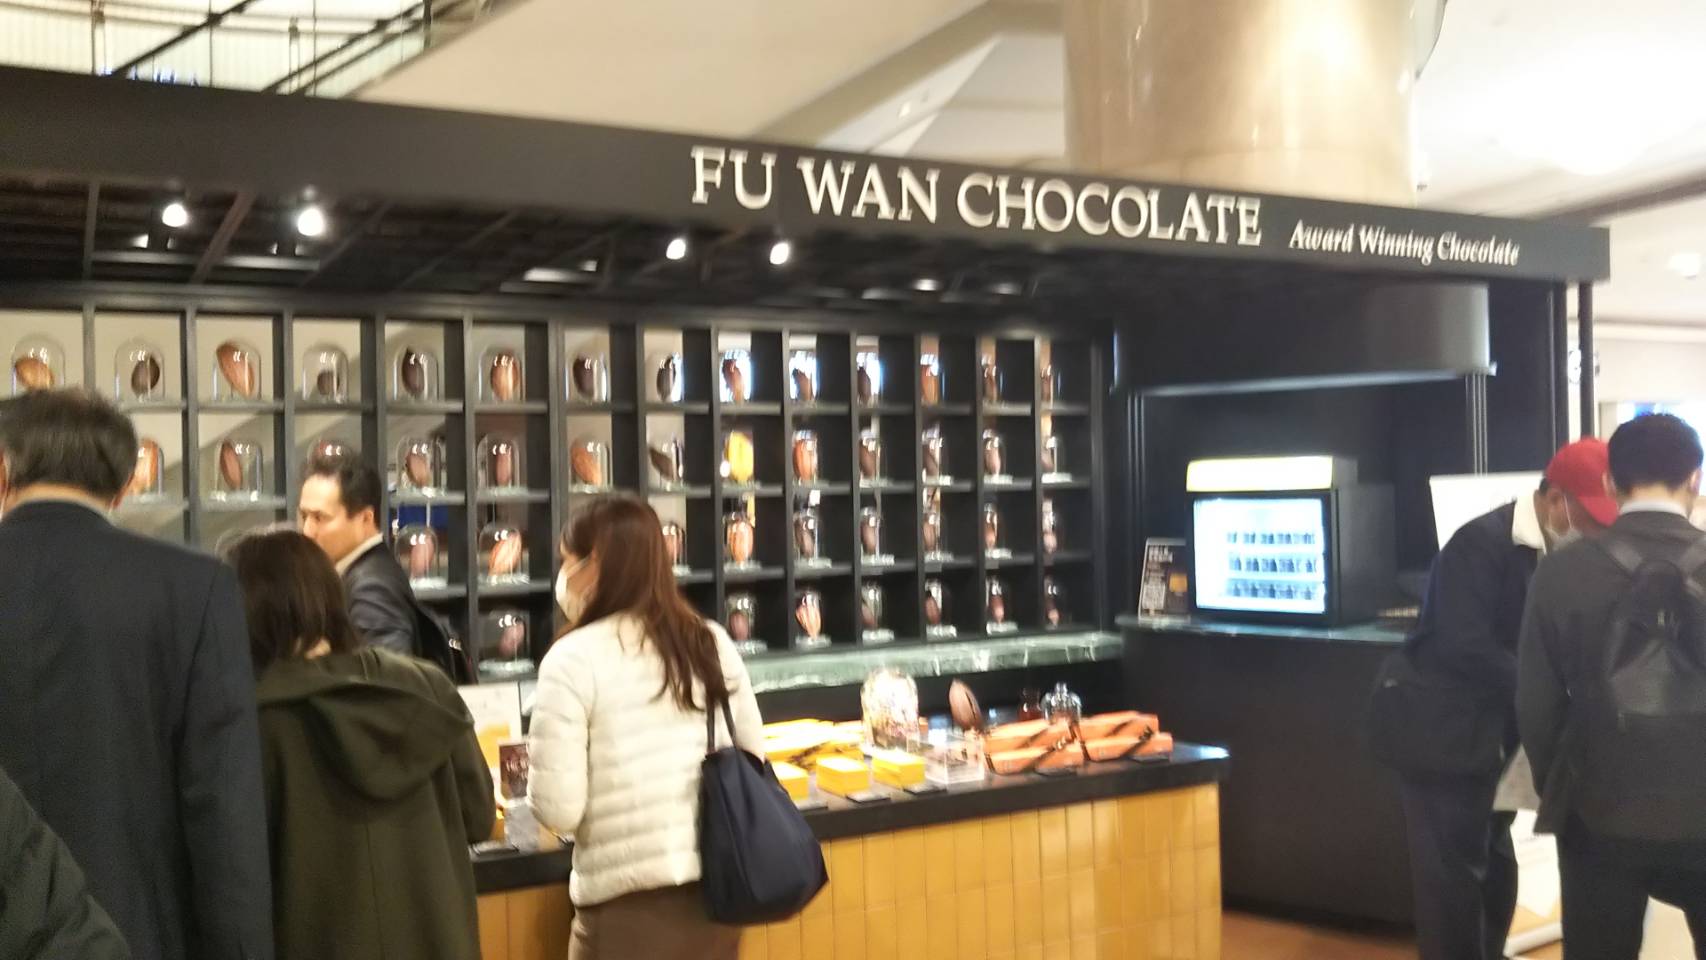 フ―ワンチョコレートを販売しているお店で、チョコレートを見る人々と、区切られた棚に瓶に入ったカカオのようなものが飾られているのが分かるお店の全体の写真